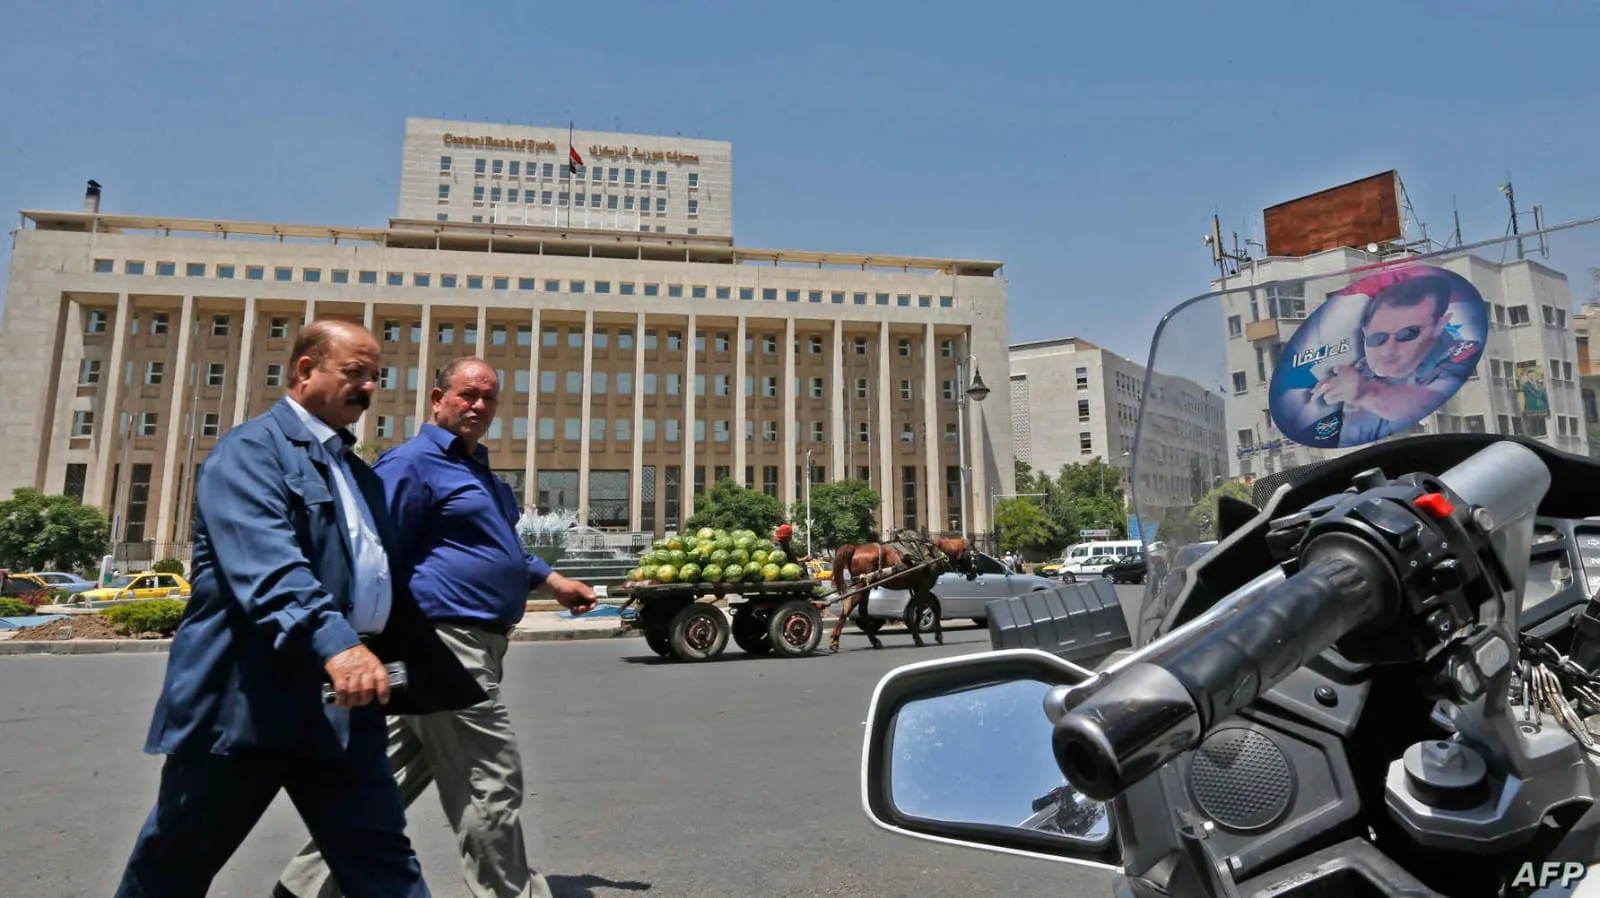 مصرف النظام يزعم بأن "سجل سوريا المالي خالٍ تقريباً من الديون"